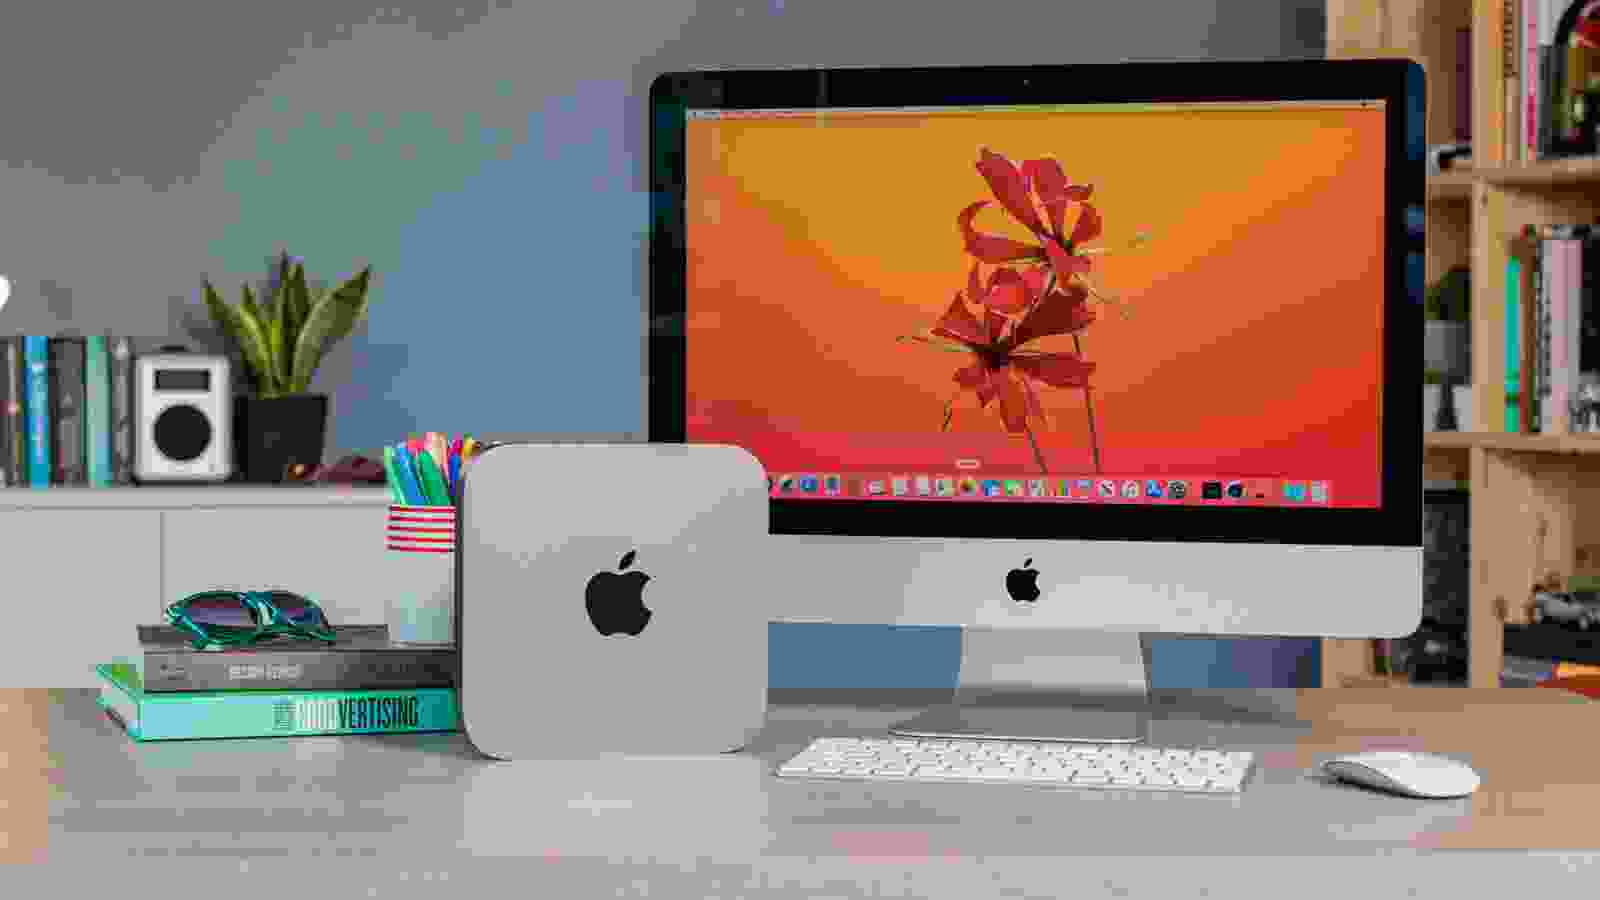 Cảm nhận được sự sang trọng và đẳng cấp của thiết kế Mac thông qua những hình ảnh đẹp, tươi mới và đầy ấn tượng. Hãy ngắm nhìn và khám phá thiết kế thiết bị này thông qua hình ảnh trên trang web chúng tôi, và cùng đắm chìm trong không gian đặc biệt của Mac.